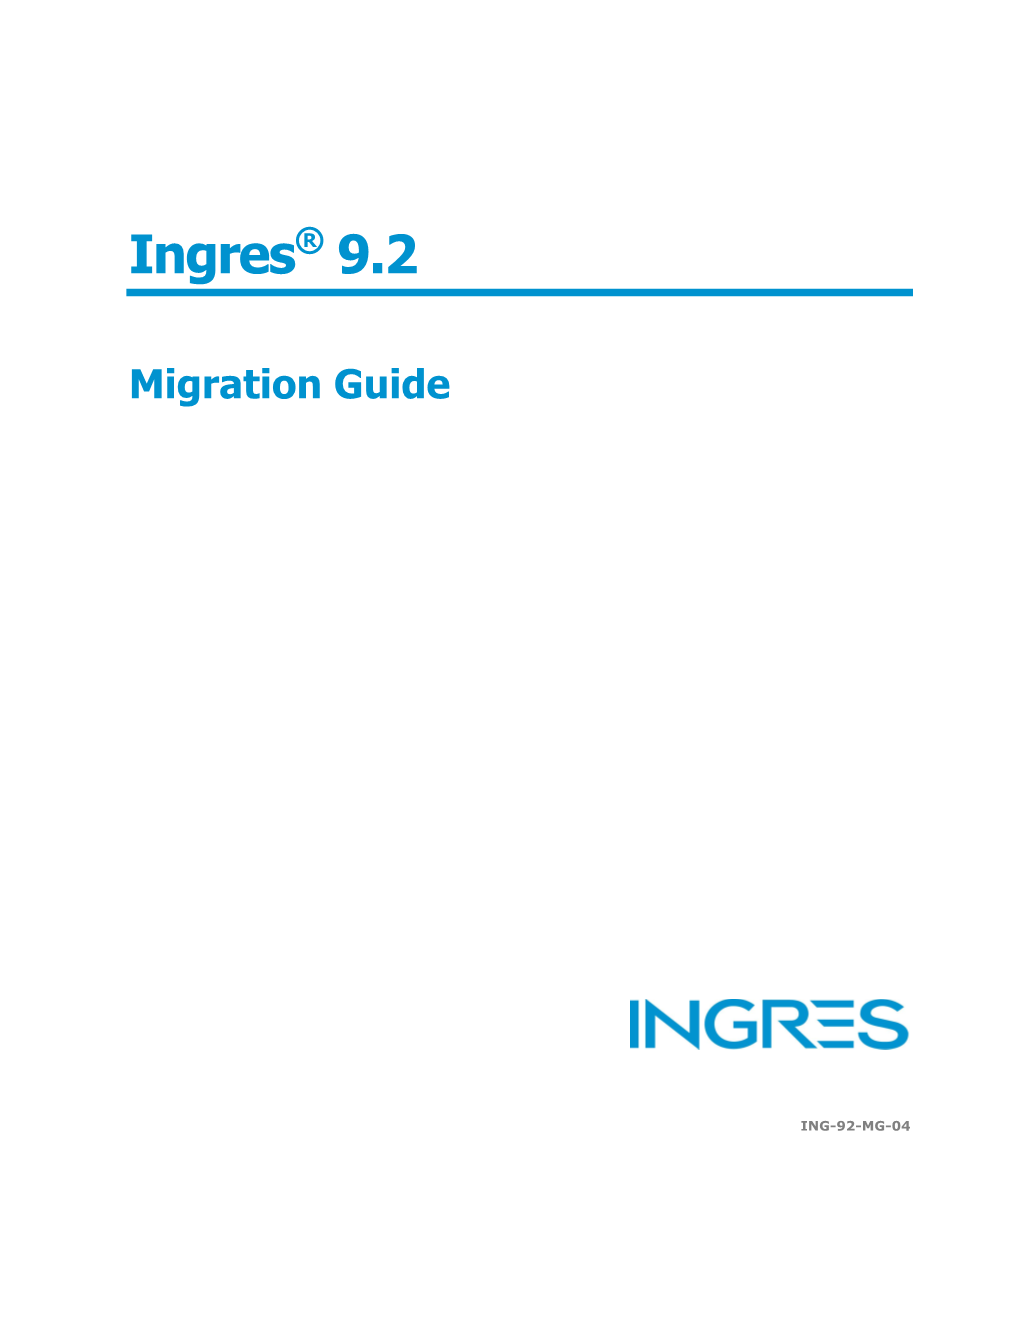 Ingres 9.2 Migration Guide